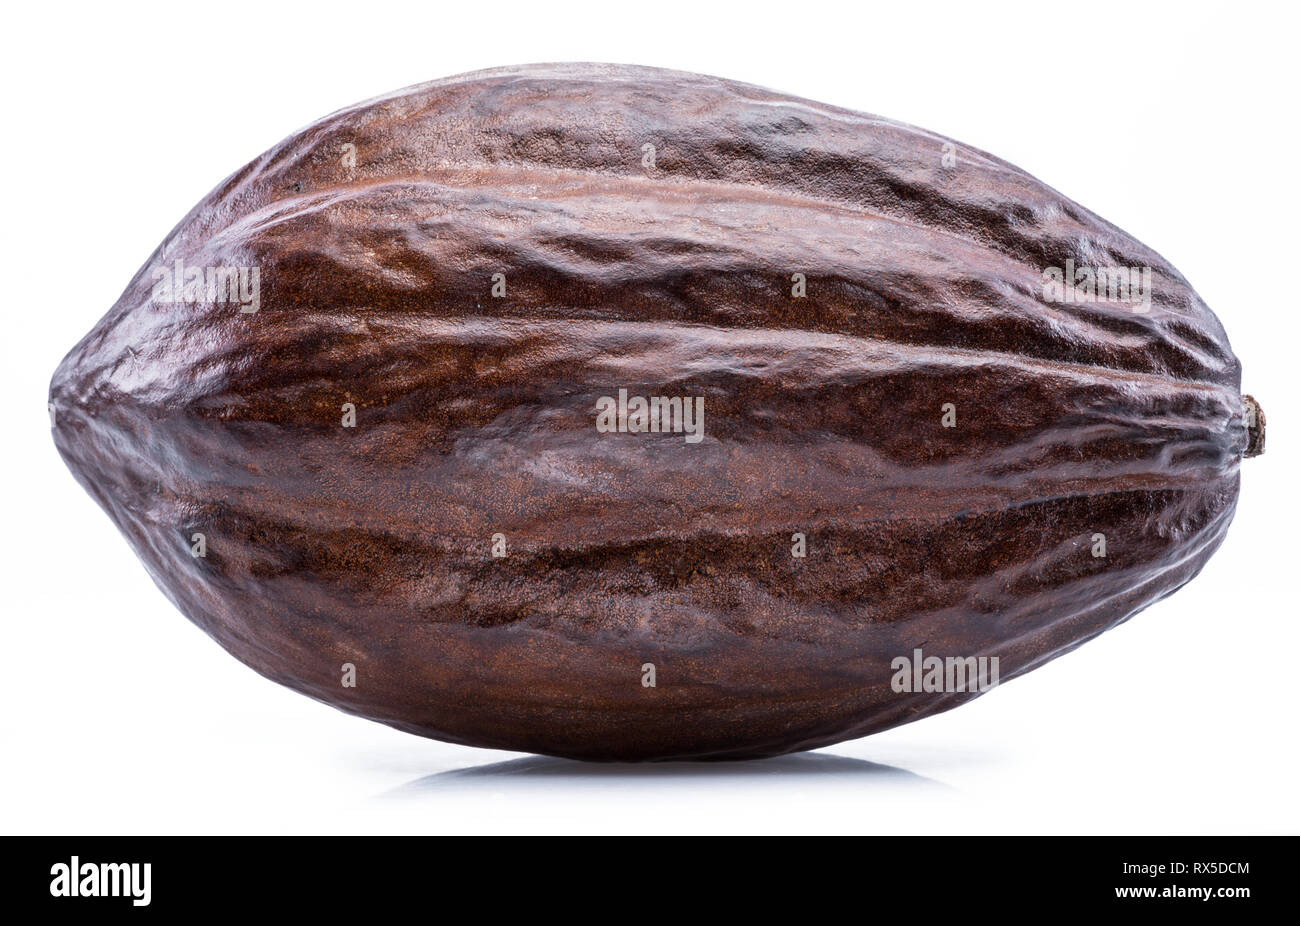 Cacao Marrone pod isolato su uno sfondo bianco. Foto Stock